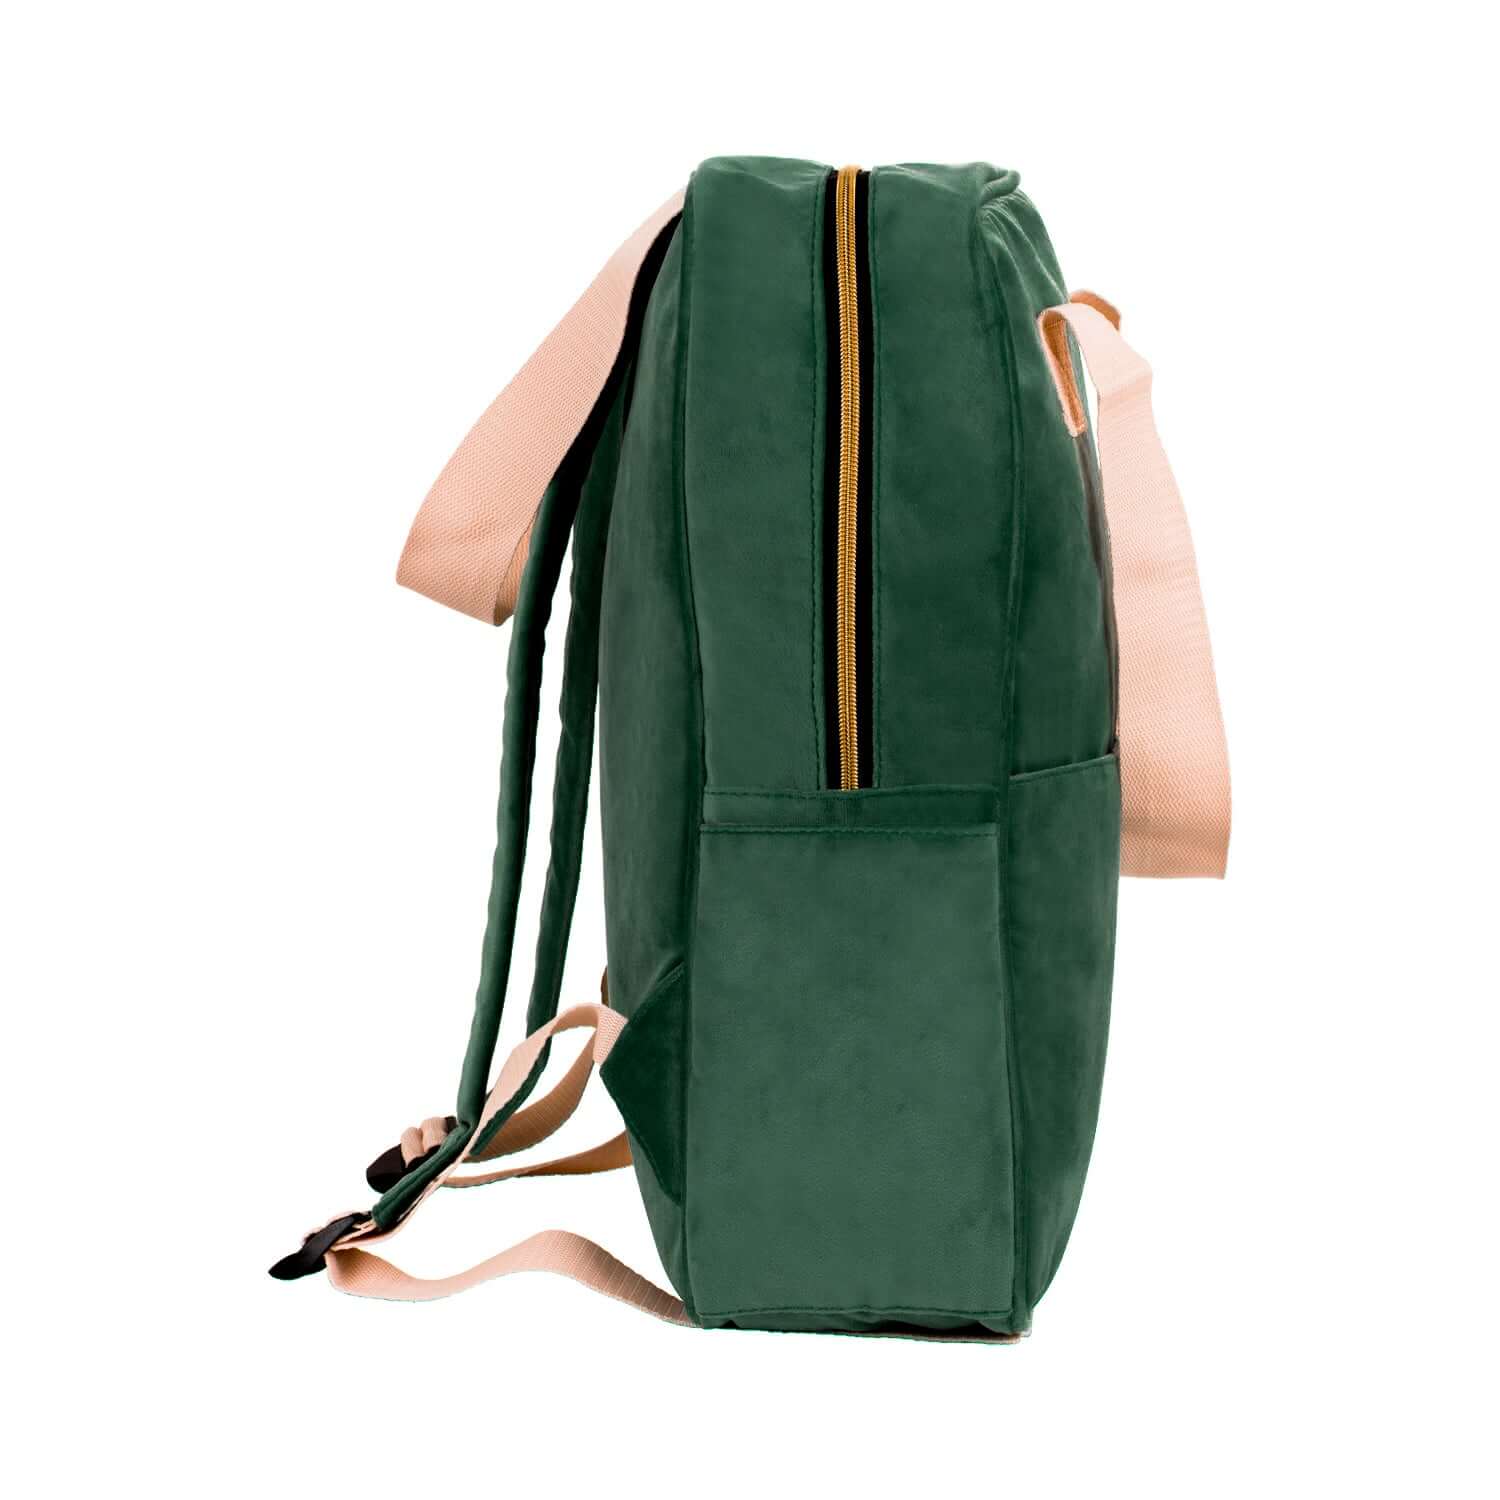 velvet green backpack best city backpack school backpack for girls 